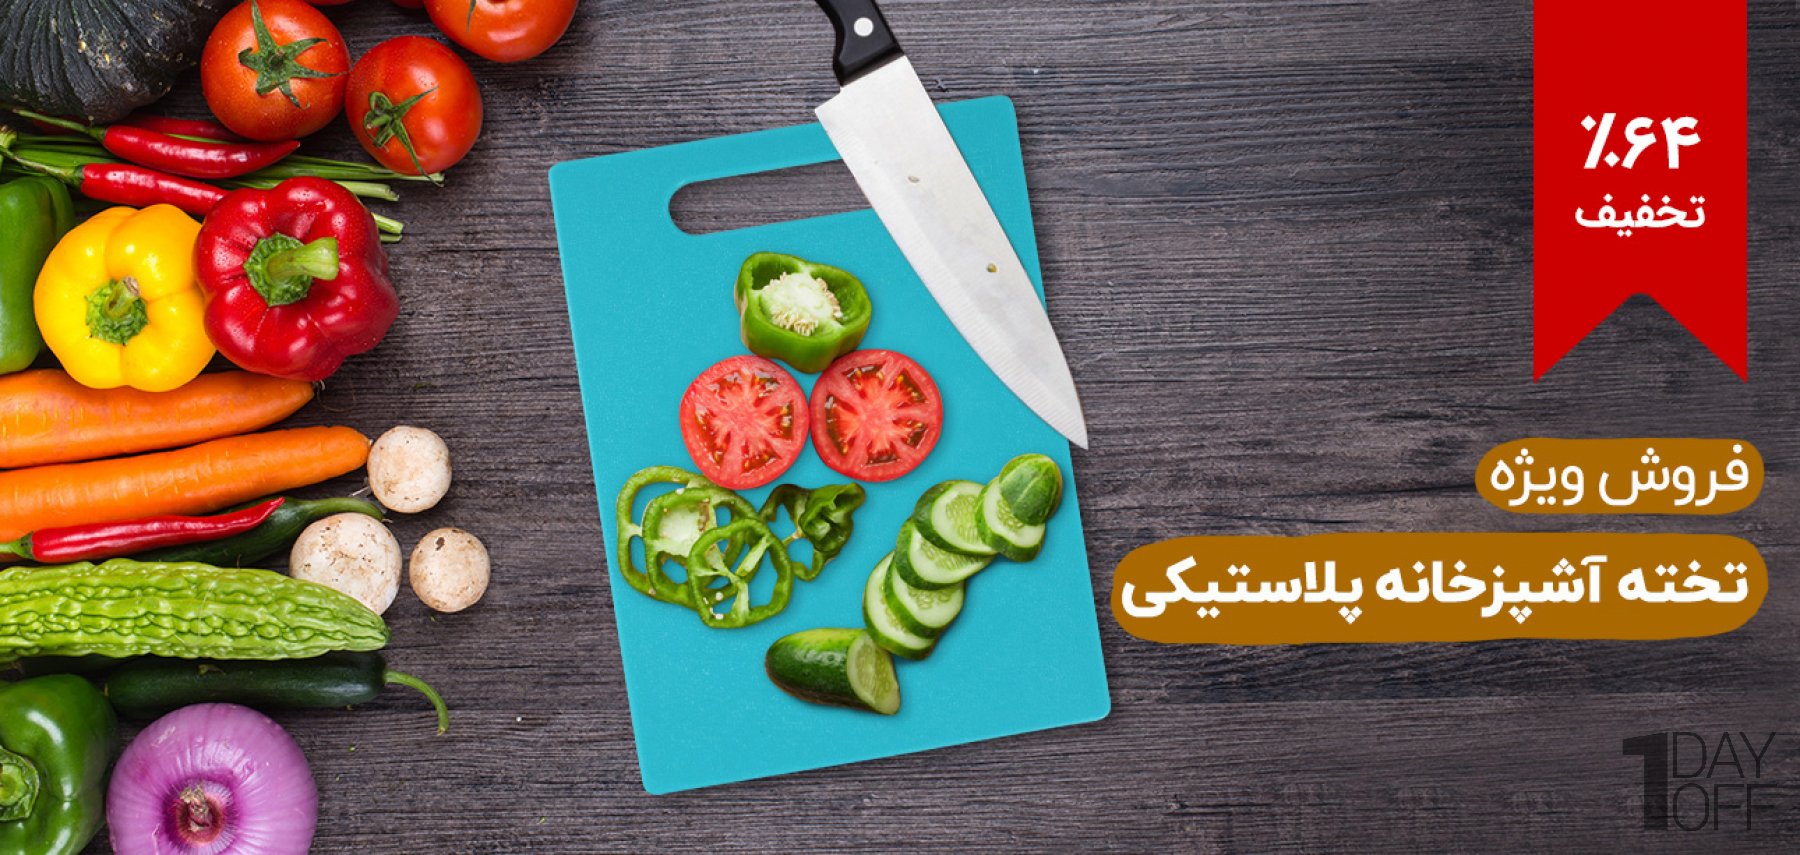 فروش ویژه تخته آشپزخانه پلاستیکی  مناسب برای گوشت و سبزیجات